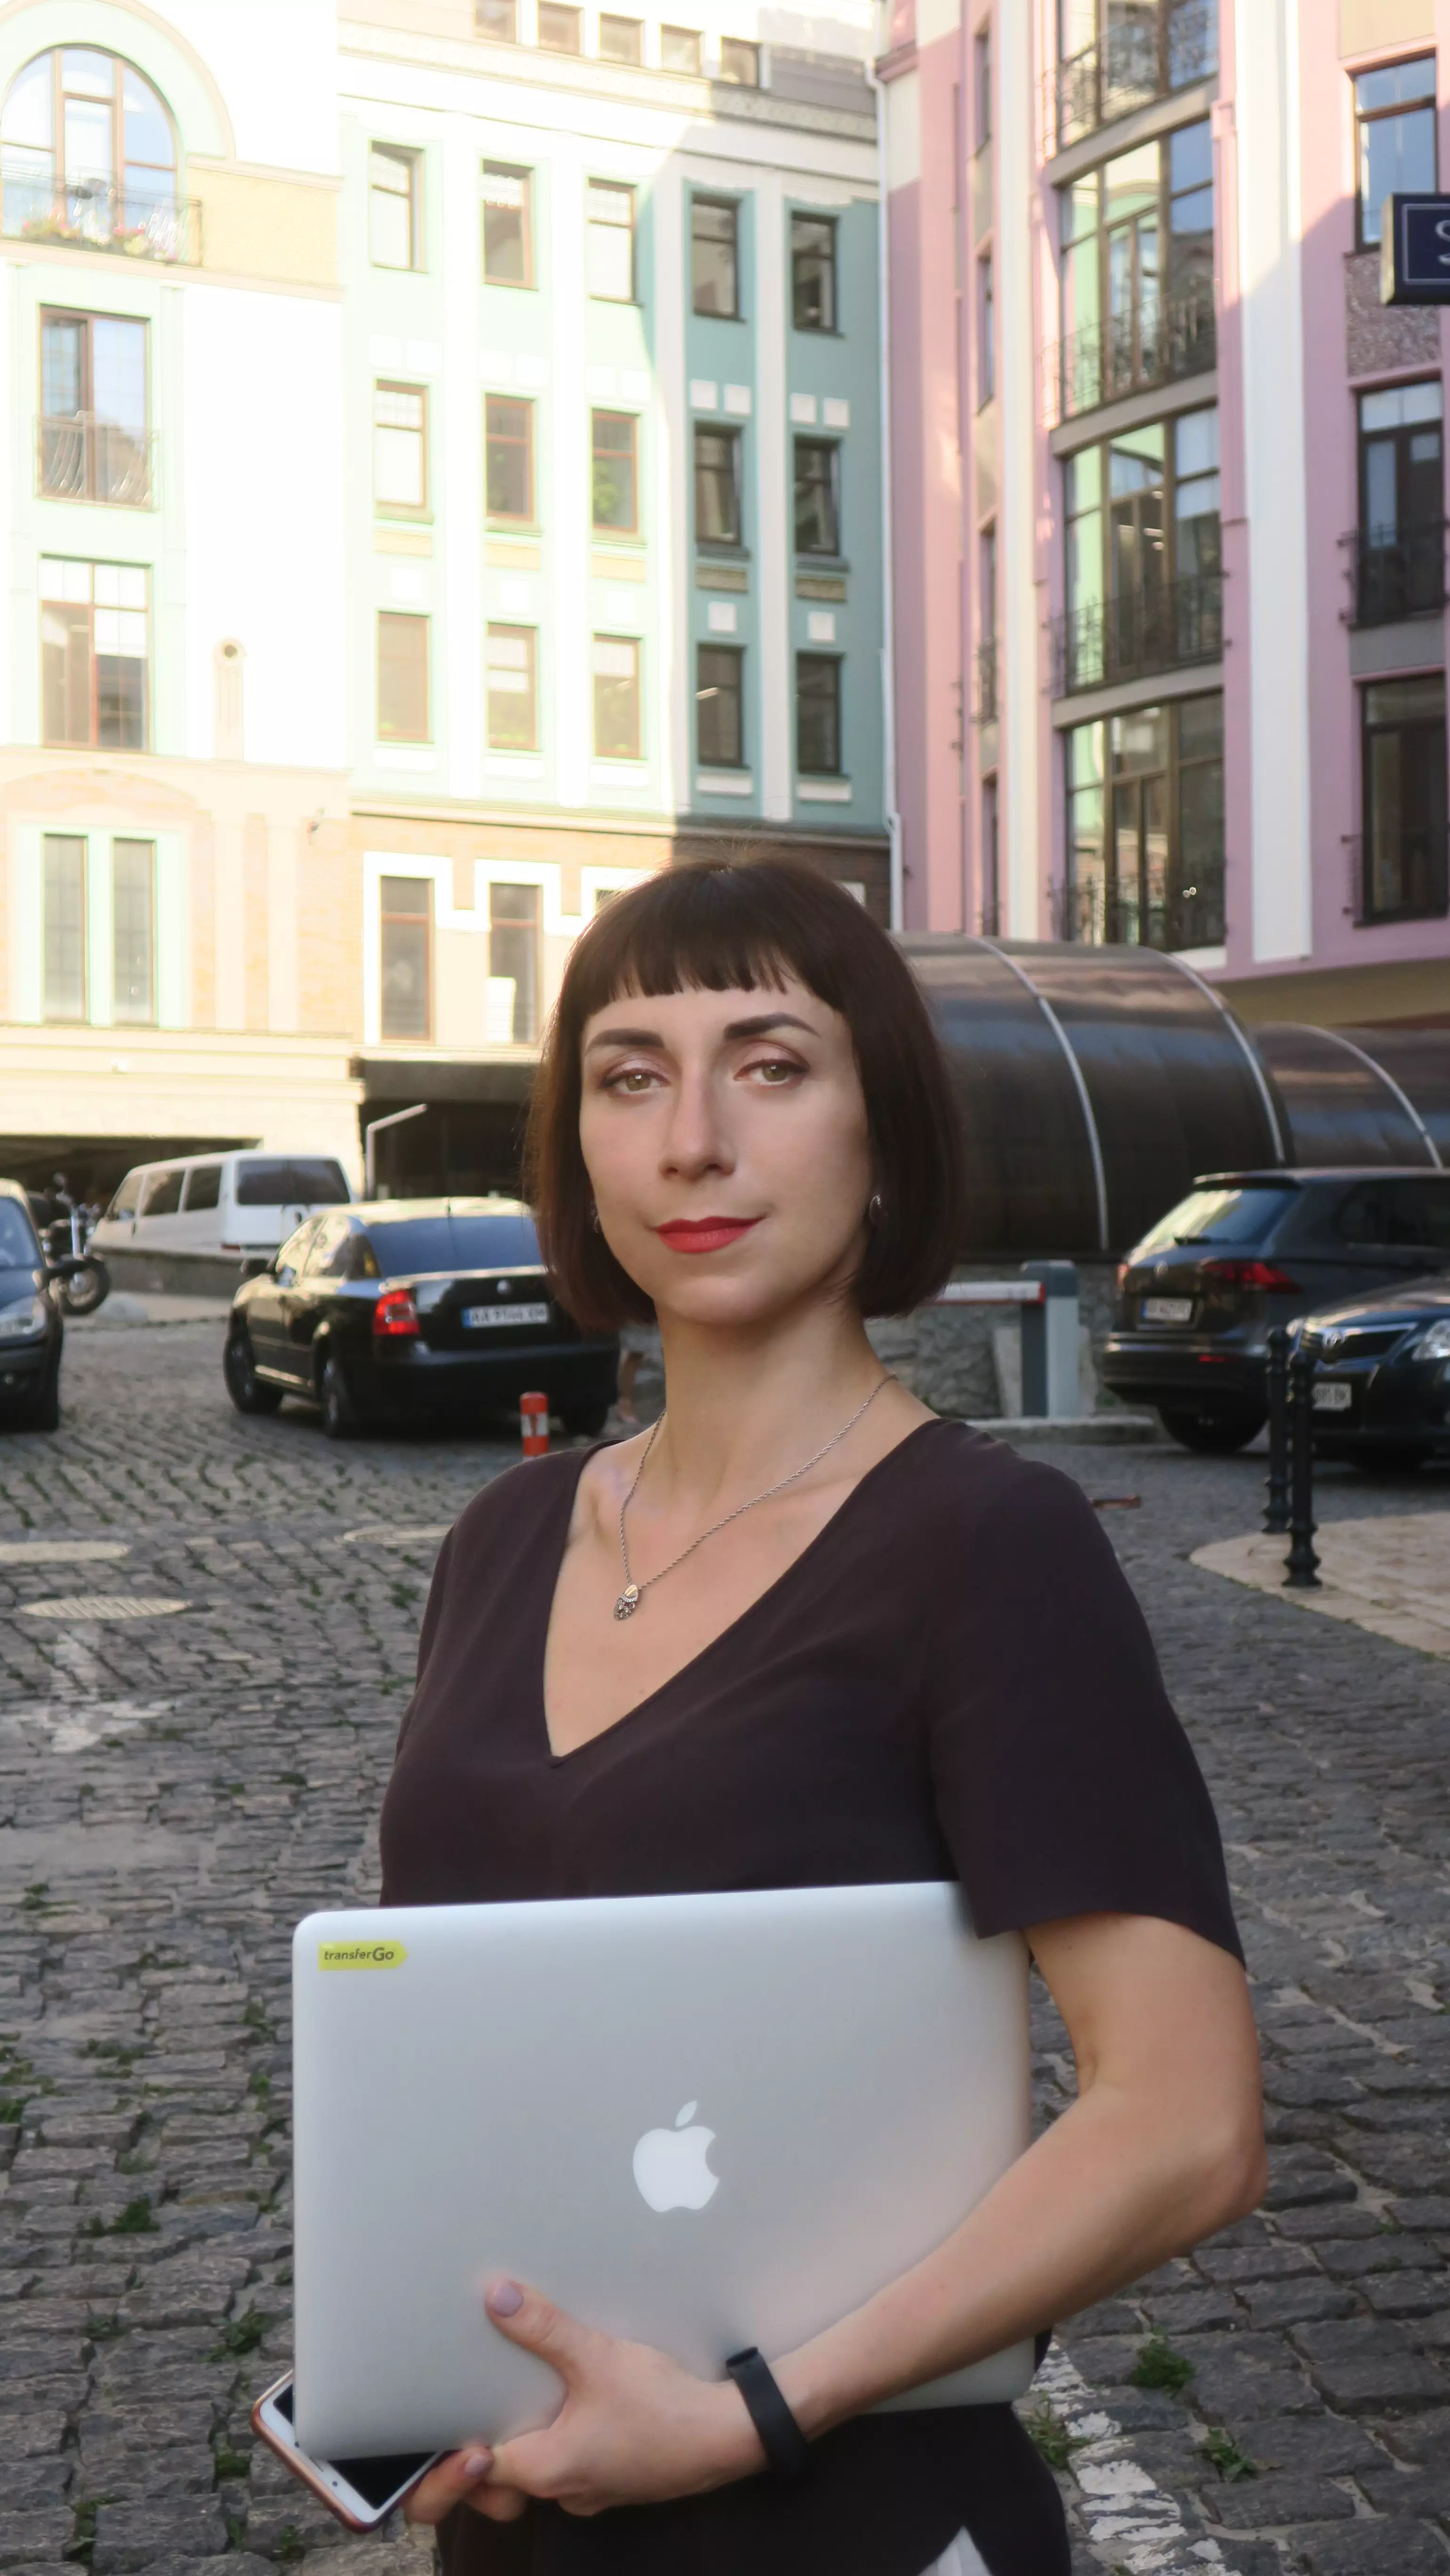 Анастасия Фоменко, менеджер по развитию бизнеса TransferGo в Украине.